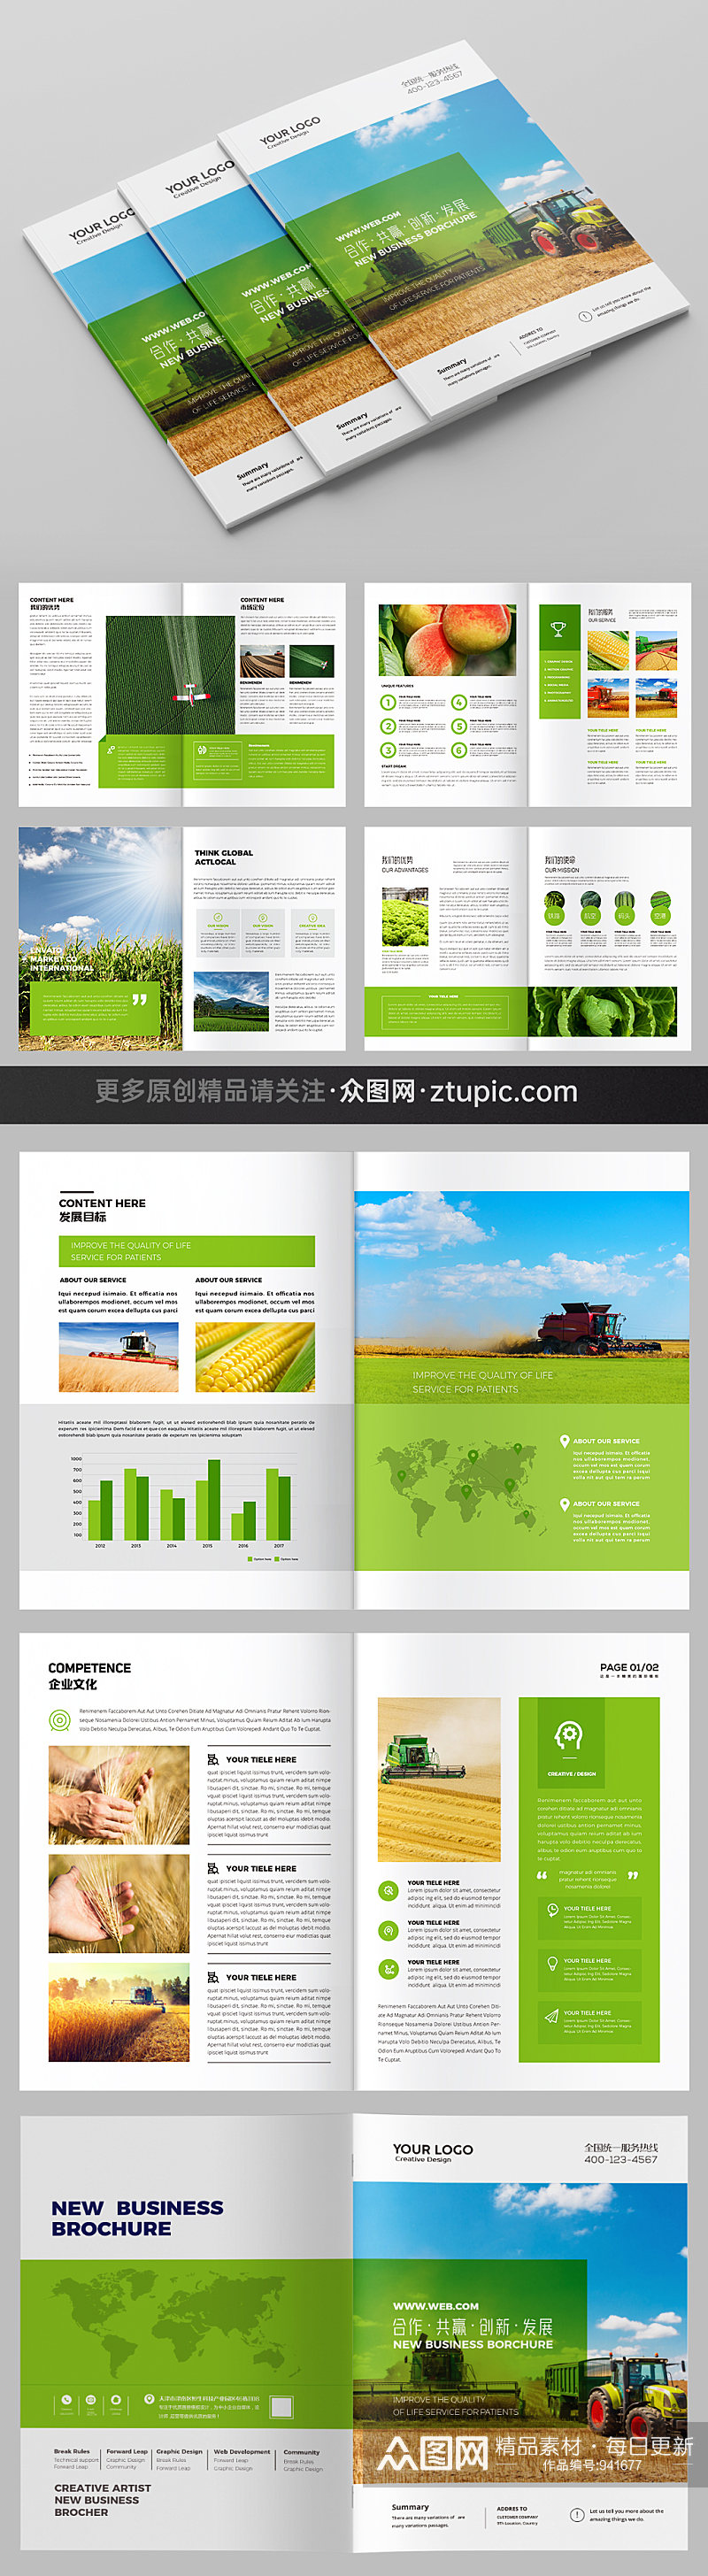 绿色农产品画册农业画册素材